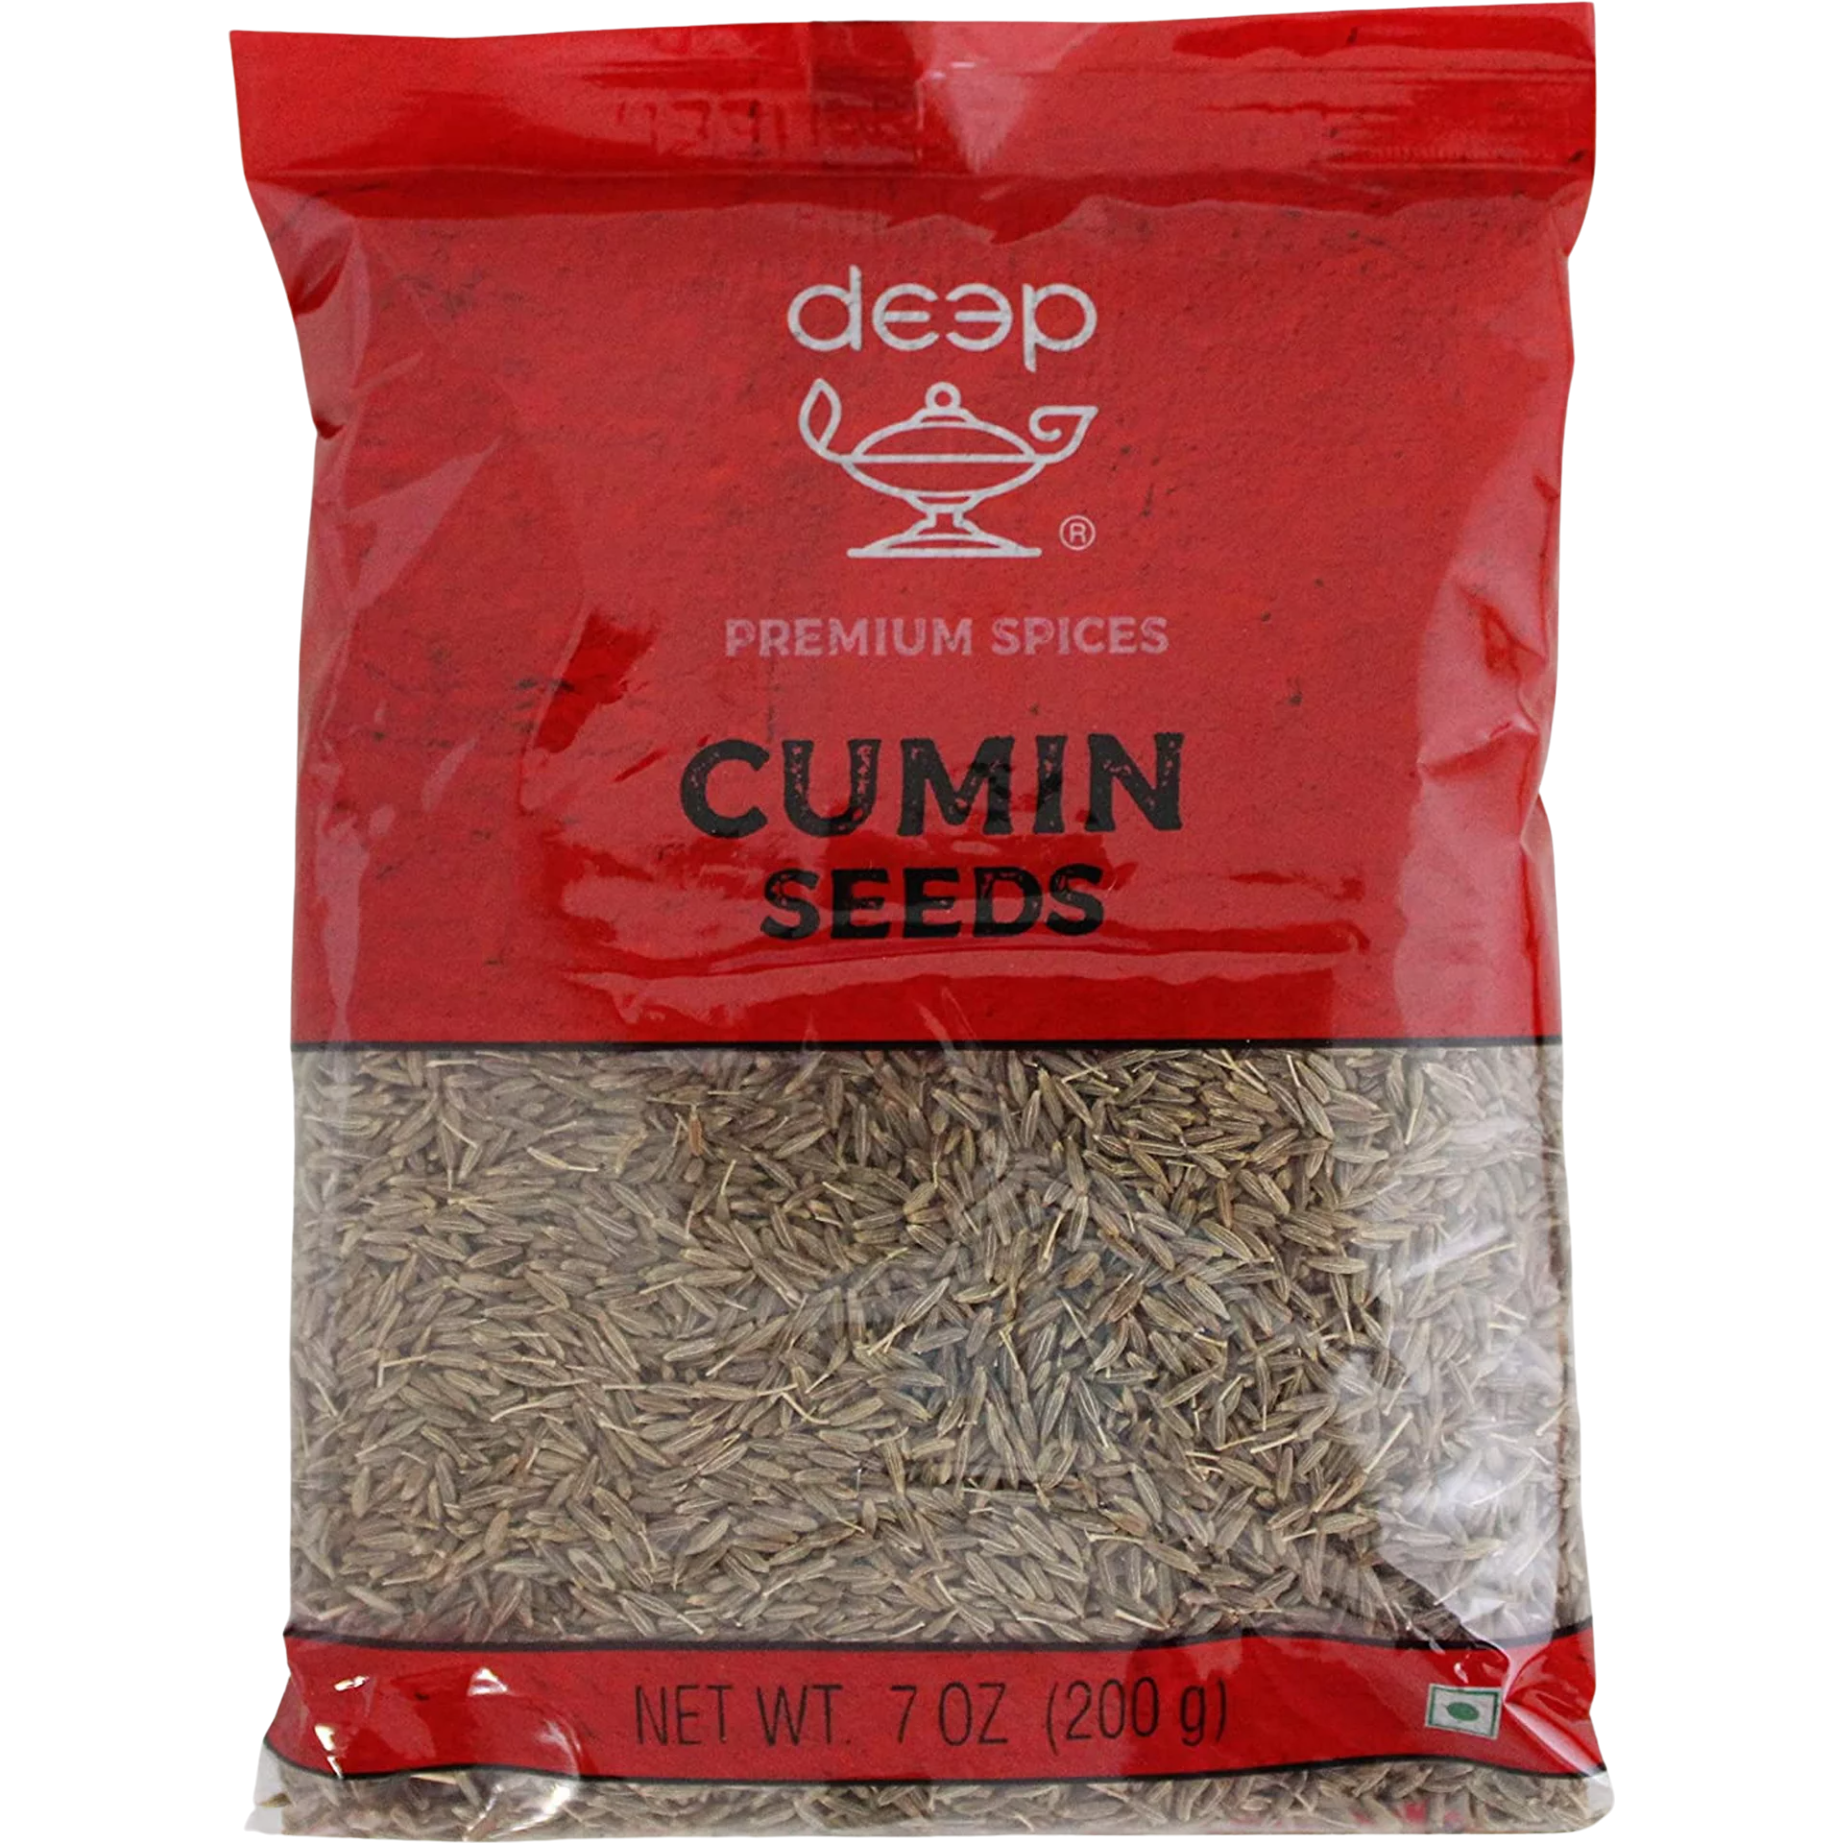 Deep Cumin Seeds - 200 Gm (7 Oz)